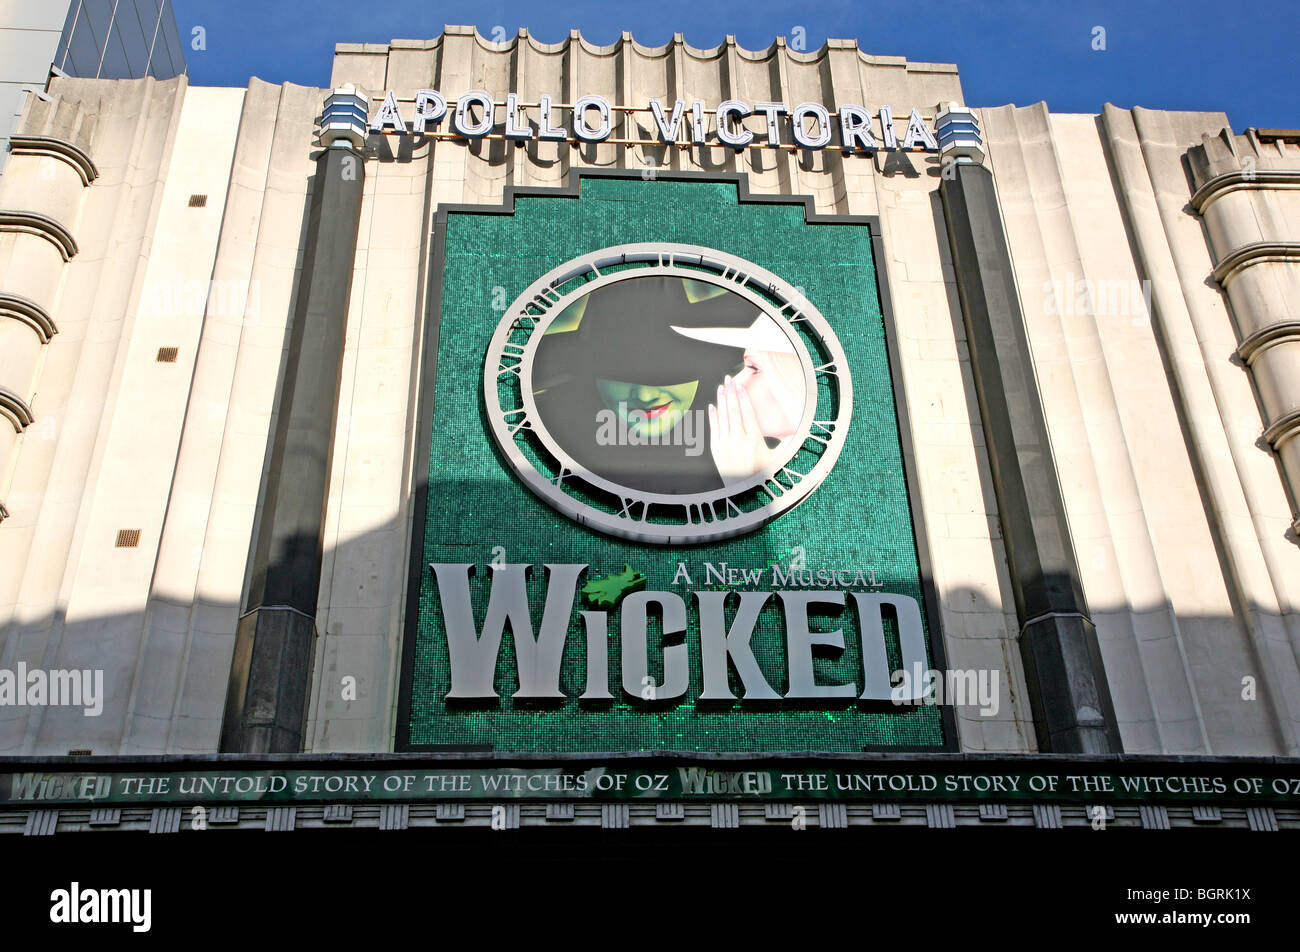 "Wicked" at Apollo Victoria theatre, London Stock Photo